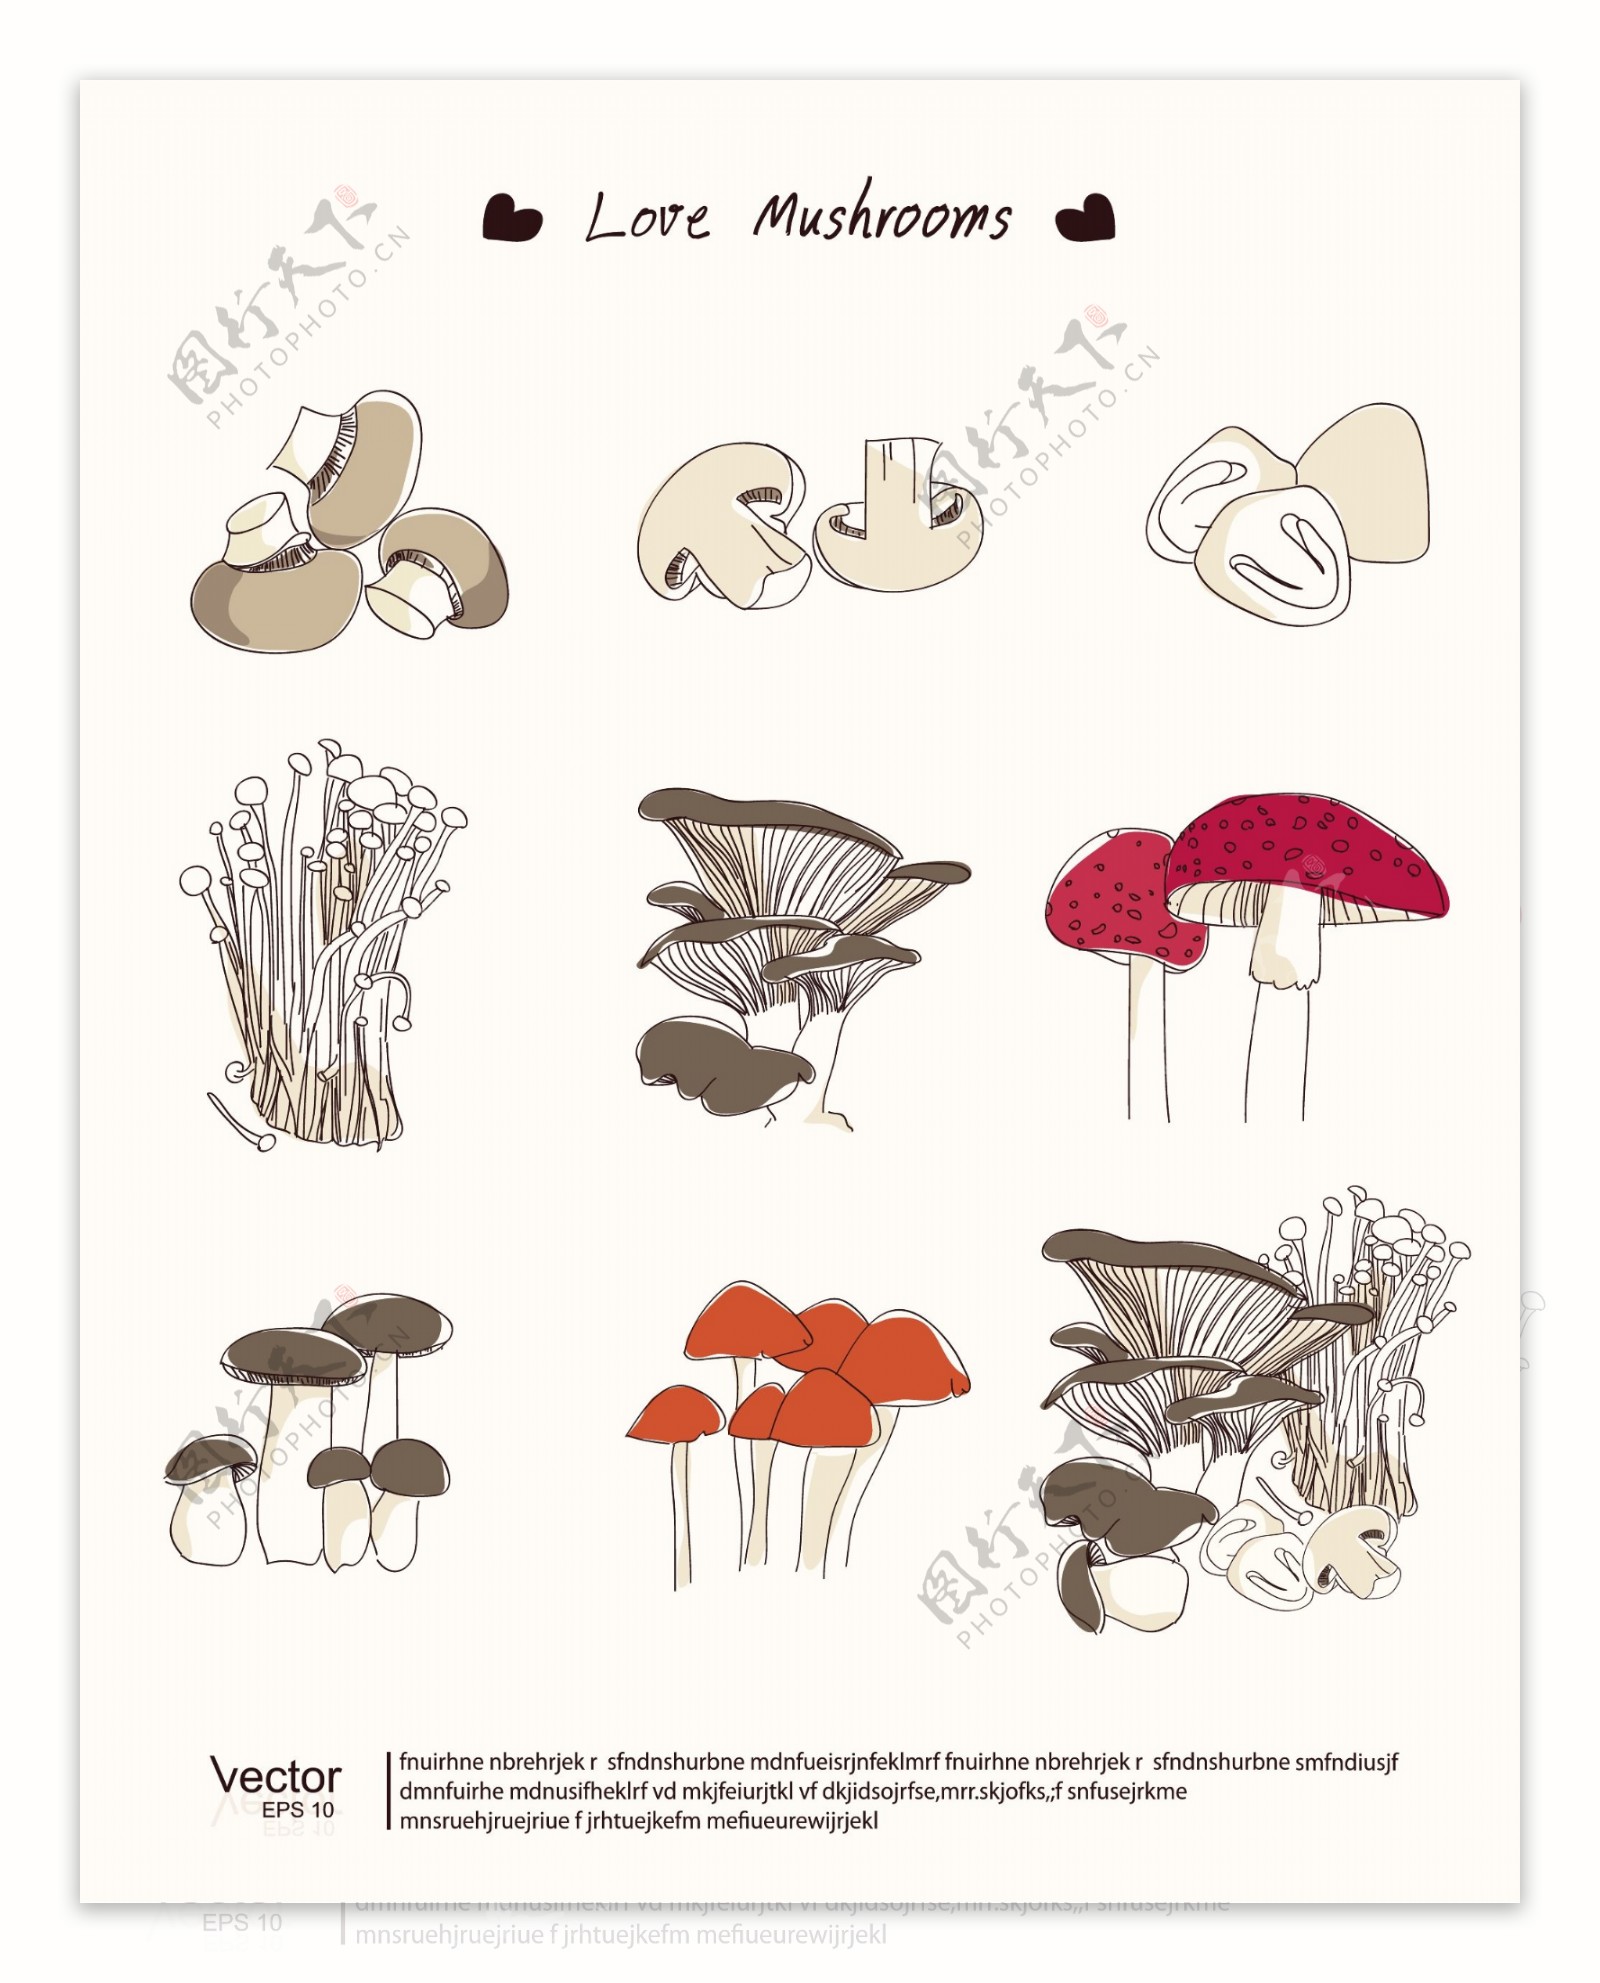 蘑菇食用菌图片